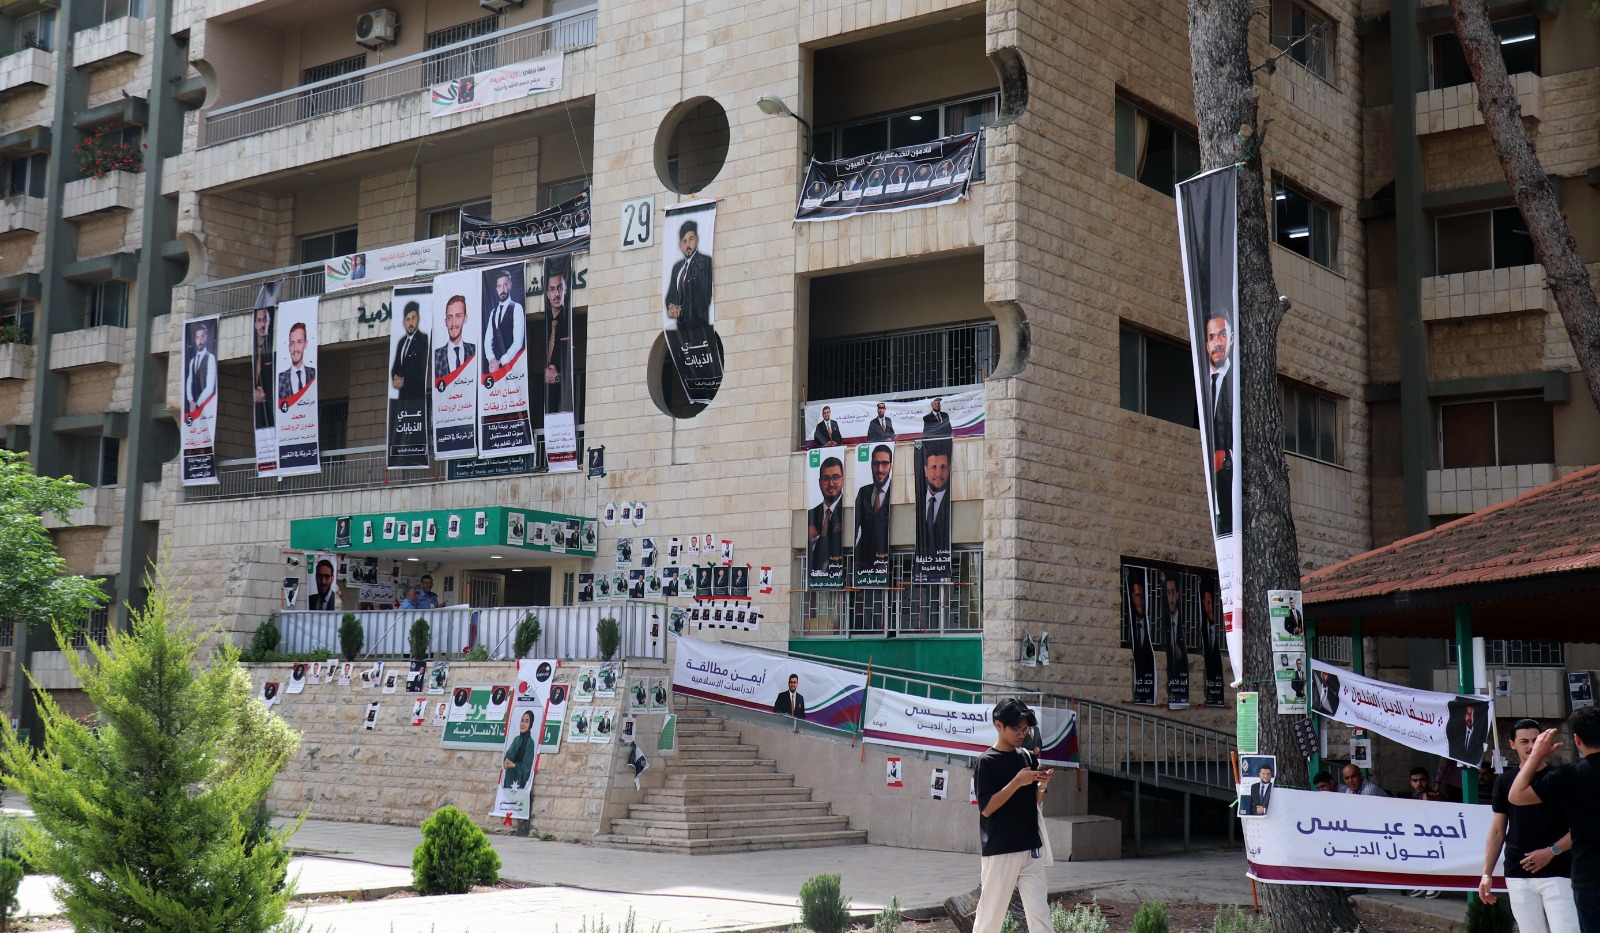 فريق من الهيئة المستقلة يراقب انتخابات اليرموك ..  واستخدام حبر خاص لضمانات النزاهة 